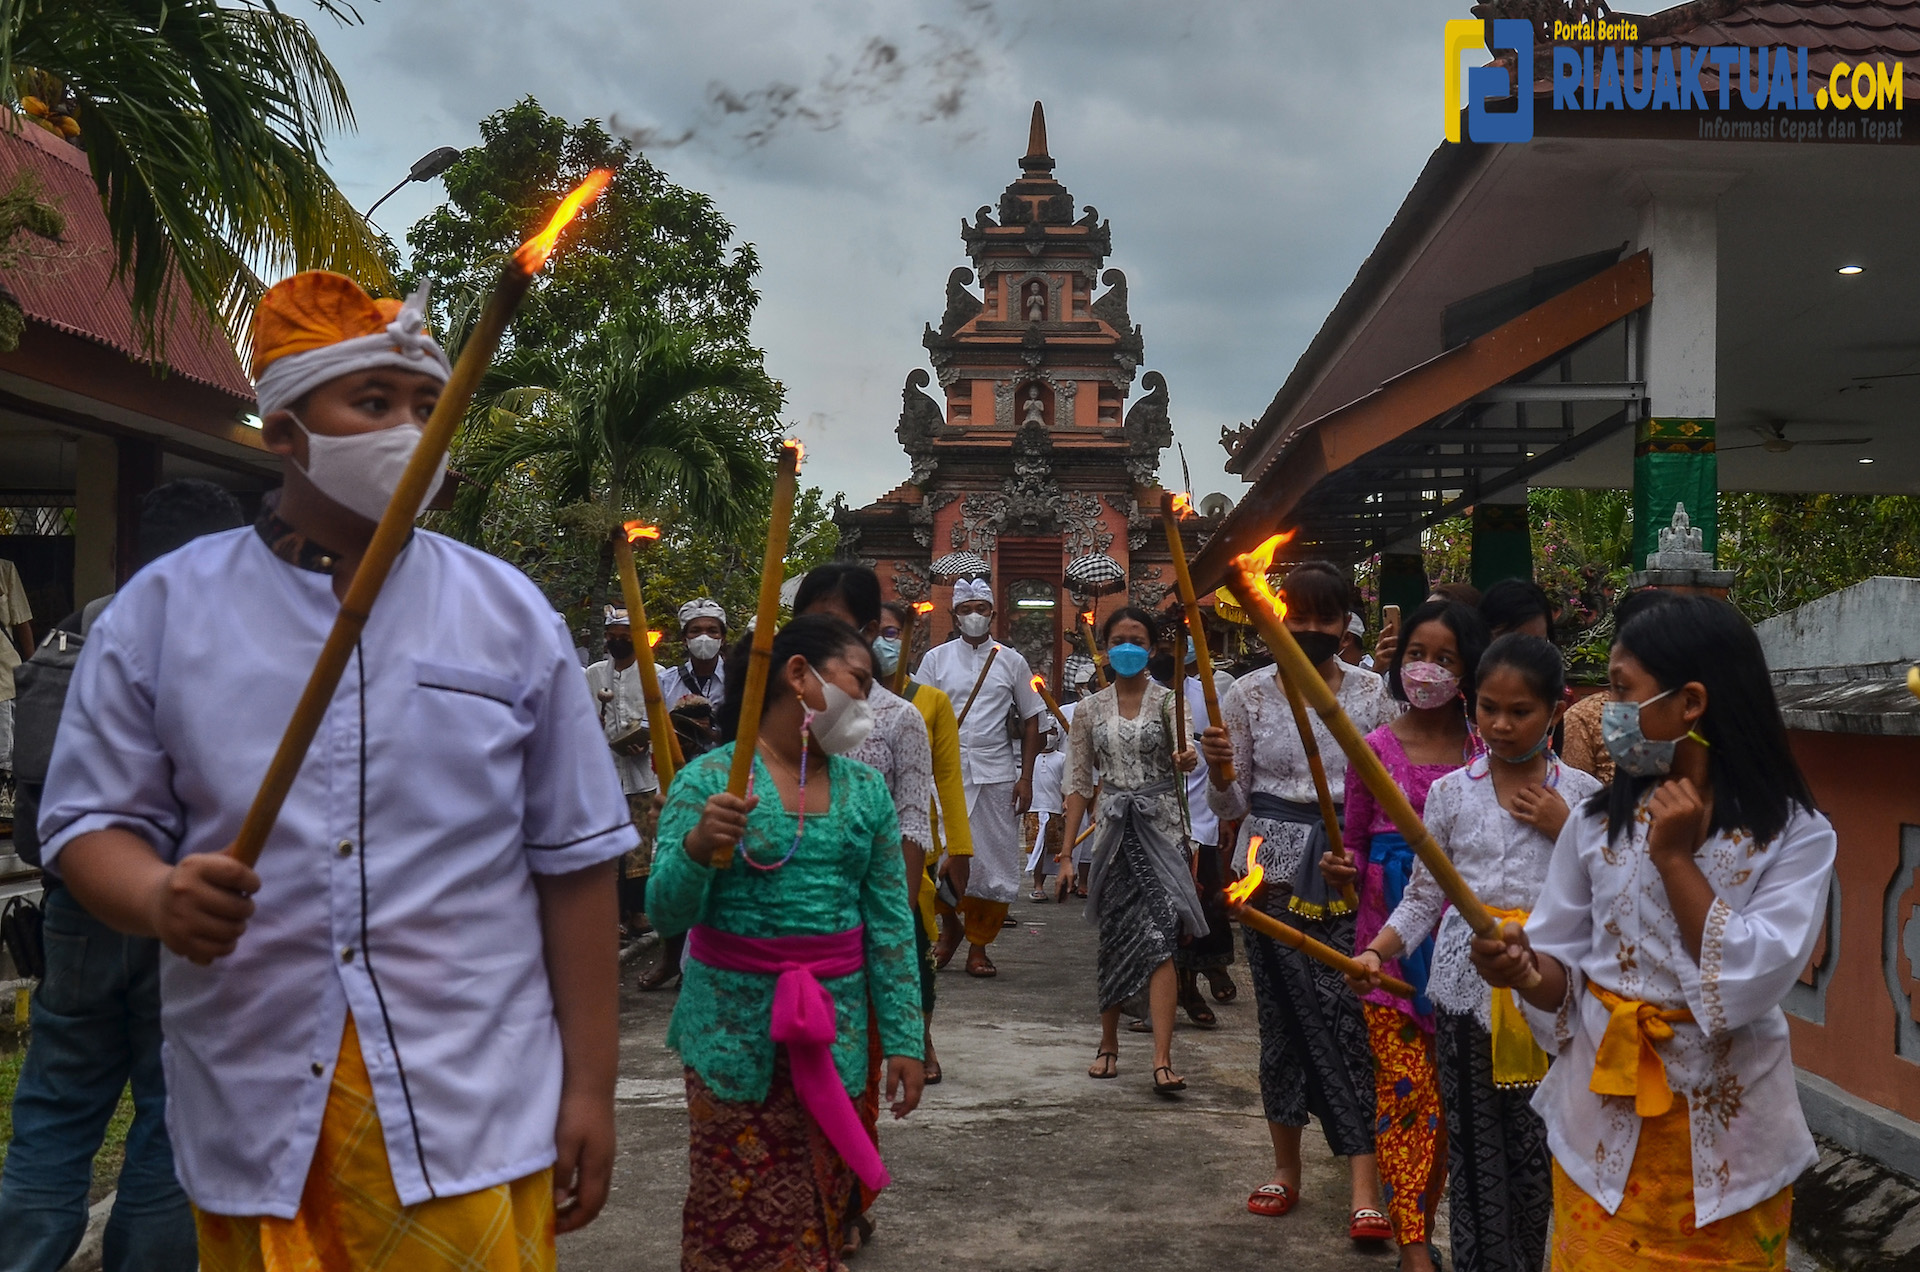 Jelang Hari Raya Nyepi, Umat Hindu di Pekanbaru Gelar Pawai Obor Tanpa Ogoh-ogoh